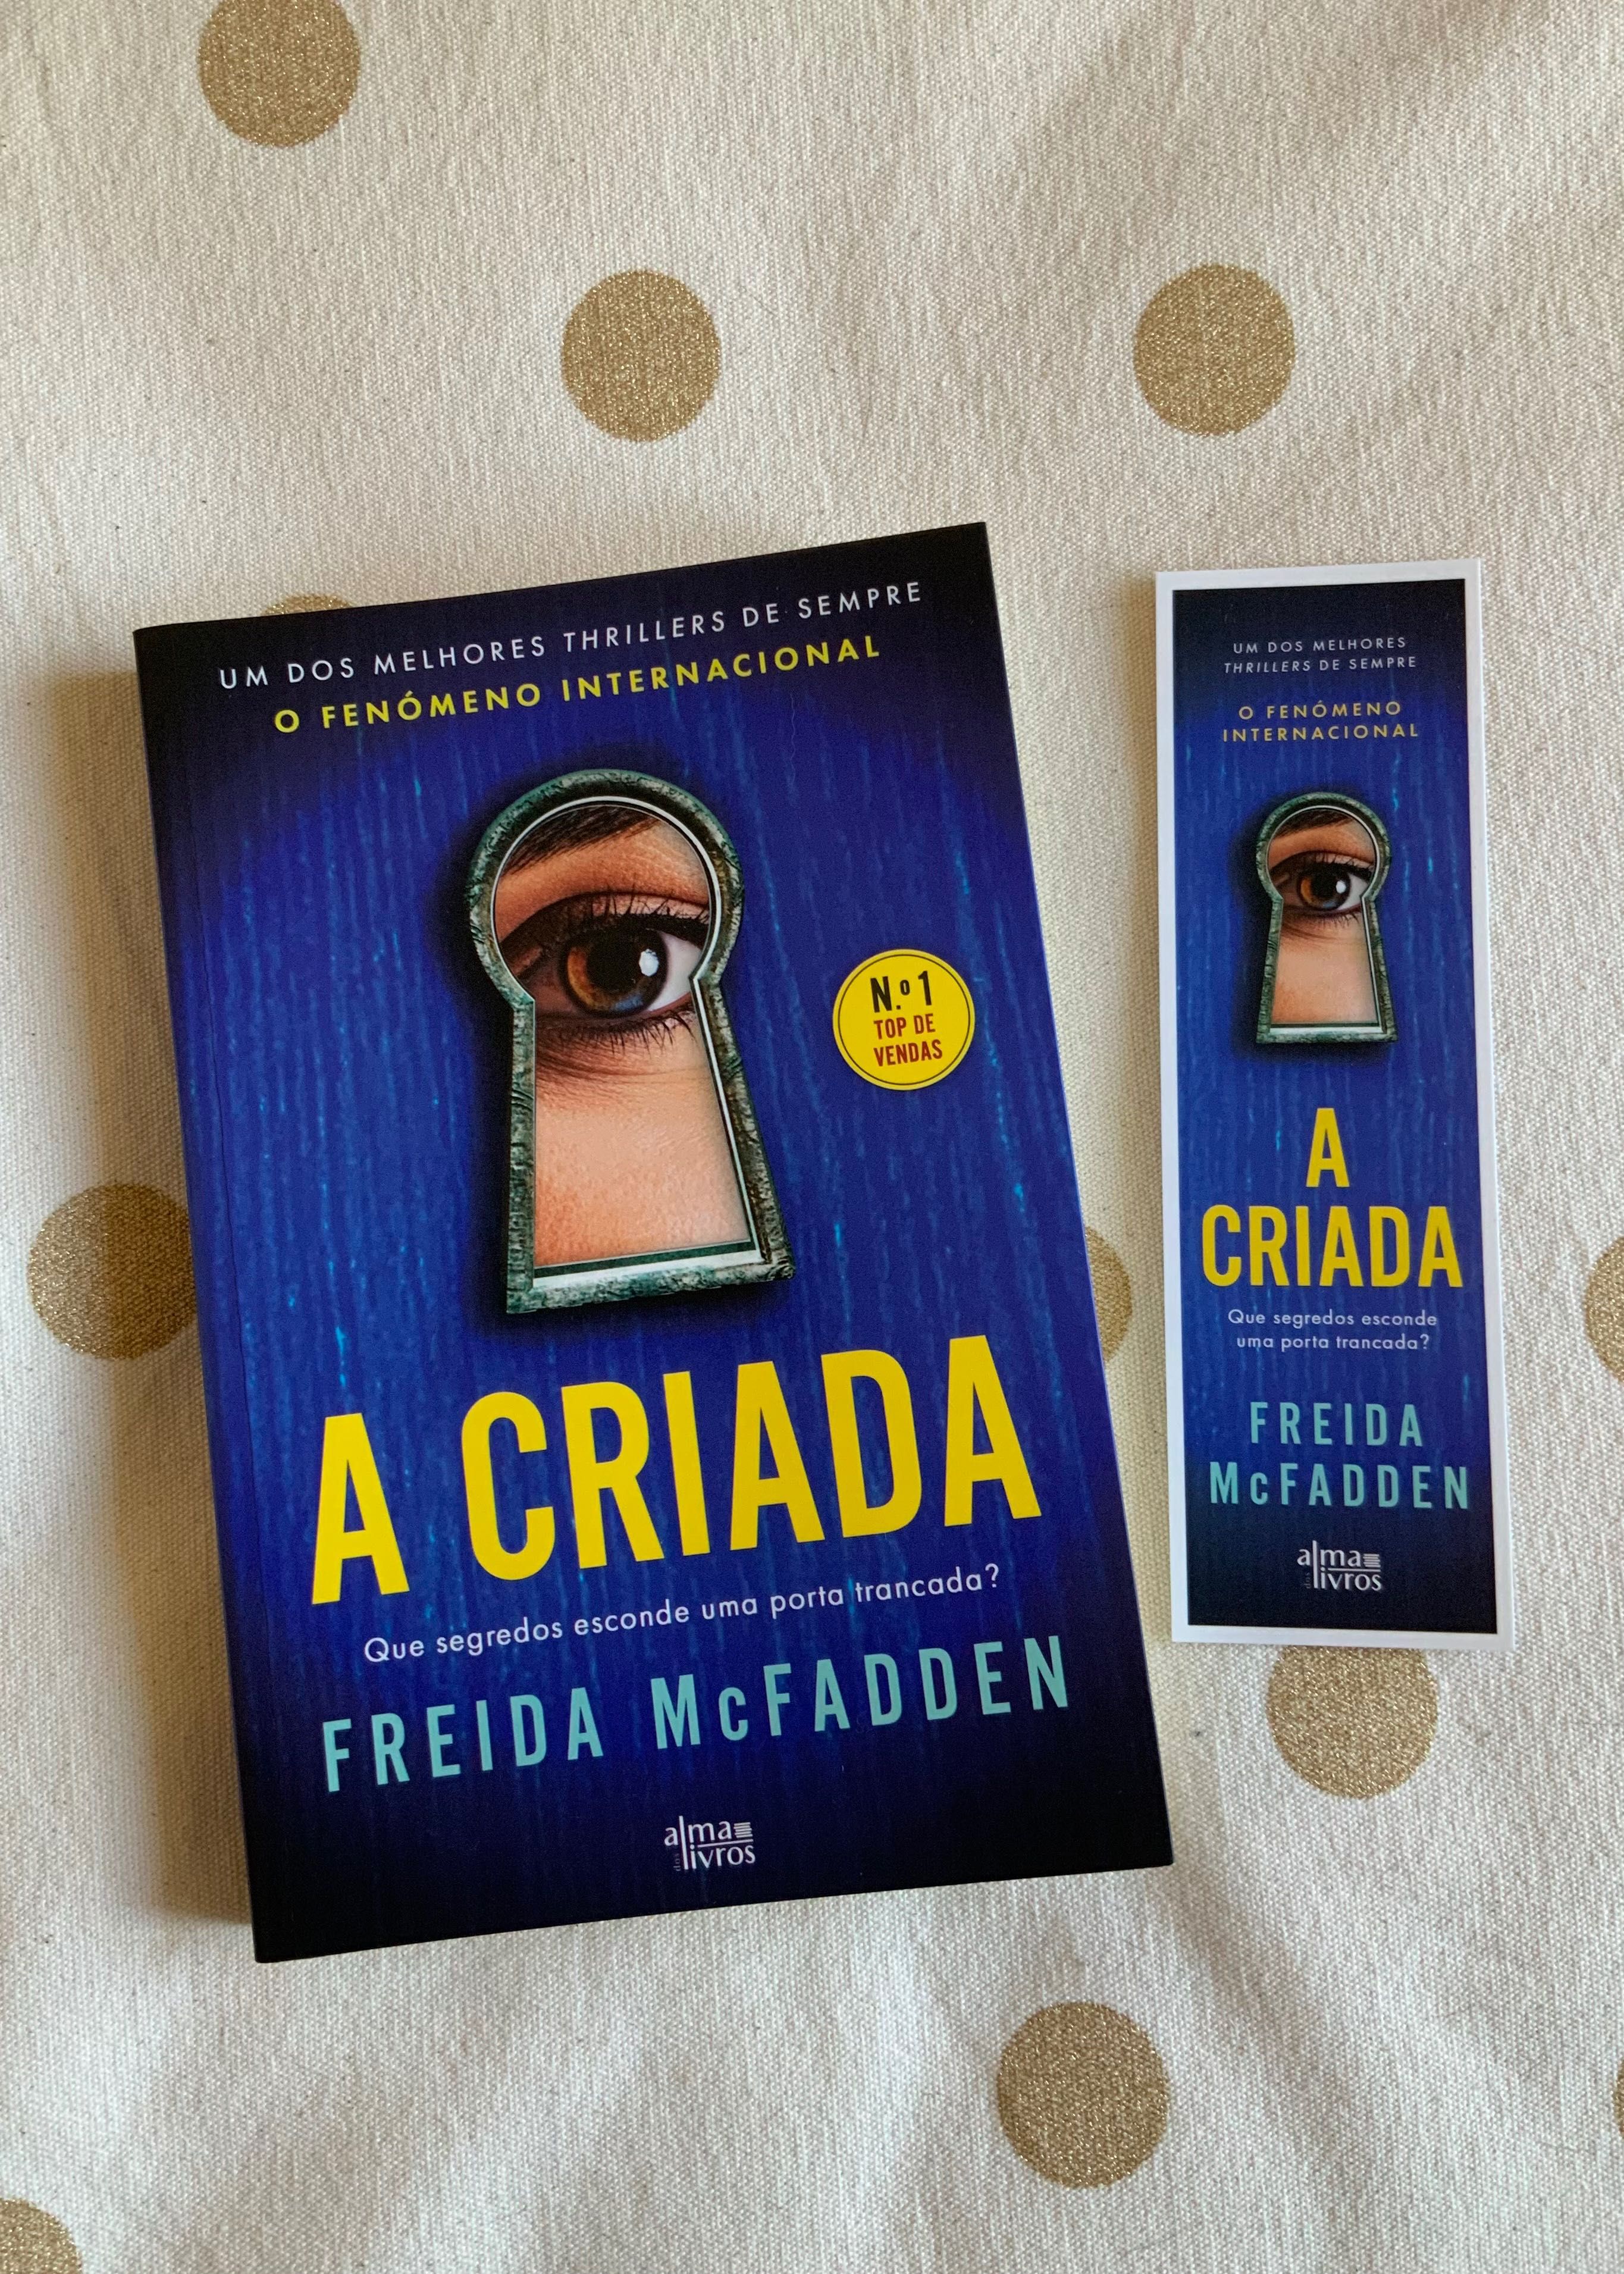 Livro novo - “A Criada” Freida McFadden